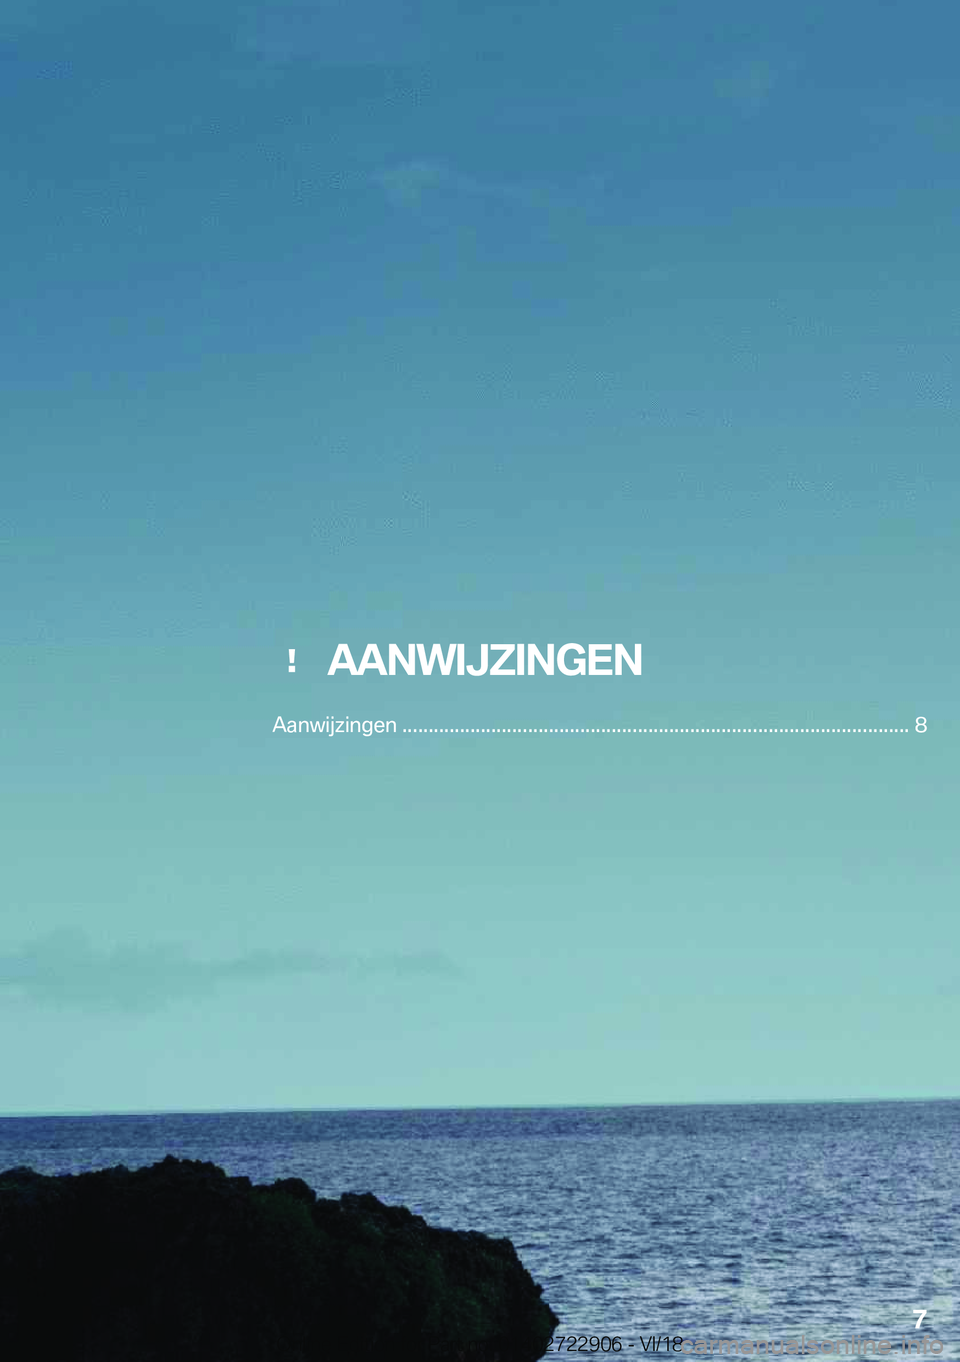 BMW X6 M 2019  Instructieboekjes (in Dutch) ���A�A�N�W�I�J�Z�I�N�G�E�N
�A�a�n�w�i�j�z�i�n�g�e�n��������������������������������������������������������������������������